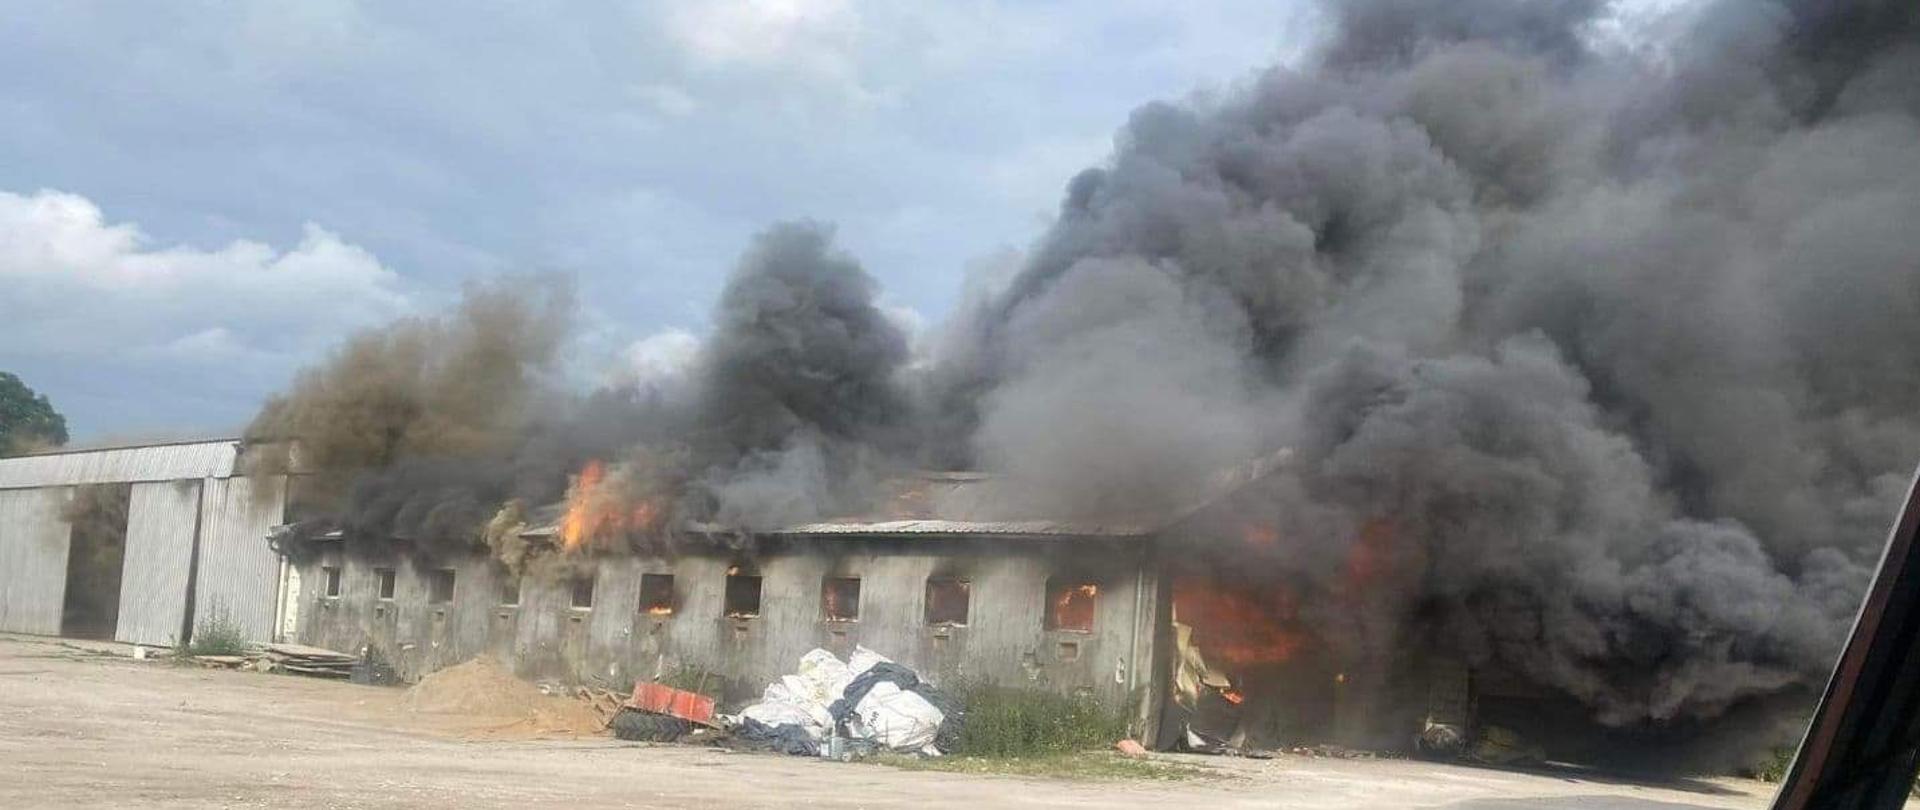 Na zdjęciu widać palący się budynek gospodarczy, dostrzegalne są płomienie ognia oraz widoczny jest czarny gęsty dym.